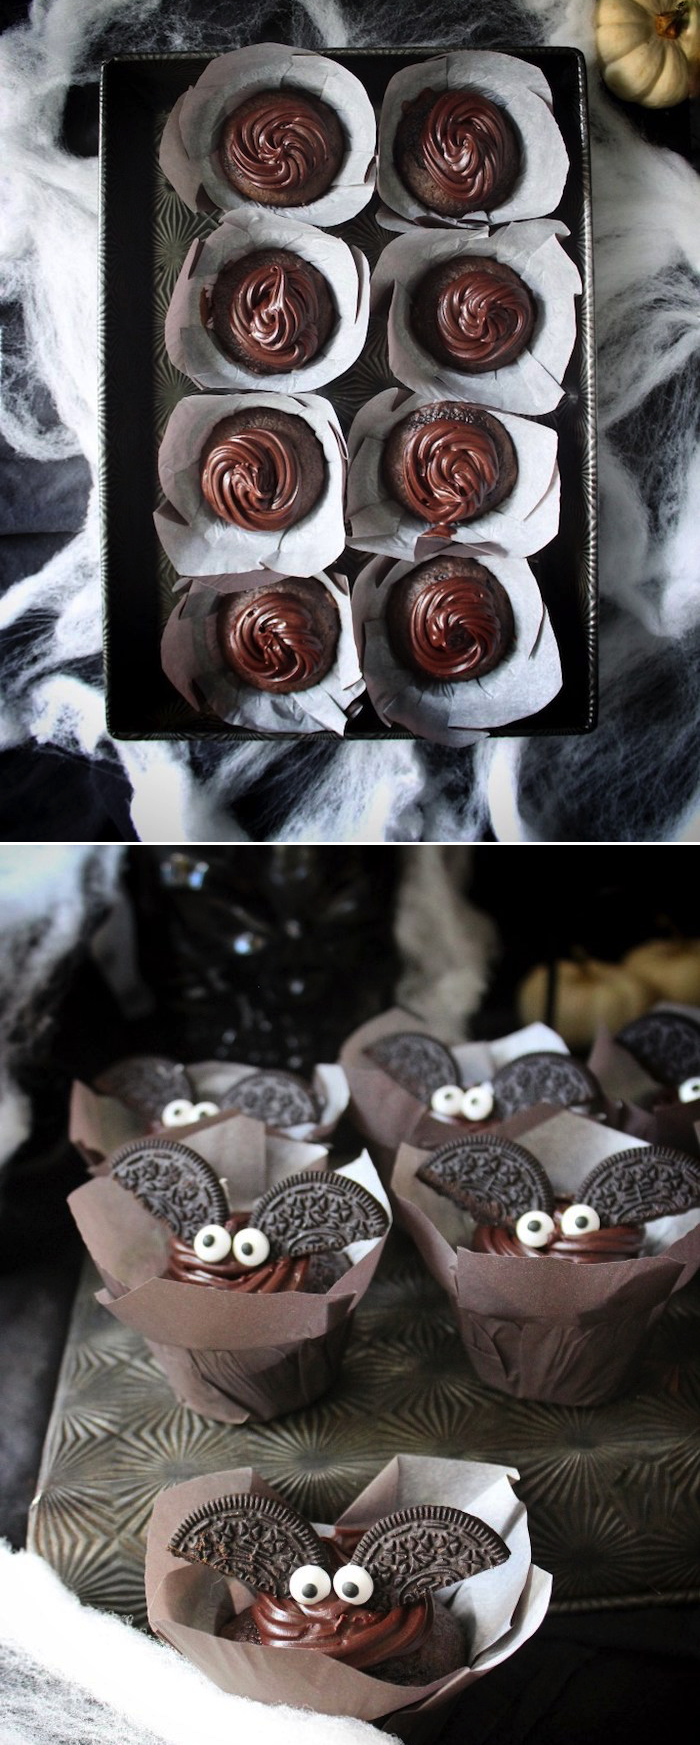 receitas do dia das bruxas, cupcakes morcegos com chocolate e biscoitos oreo